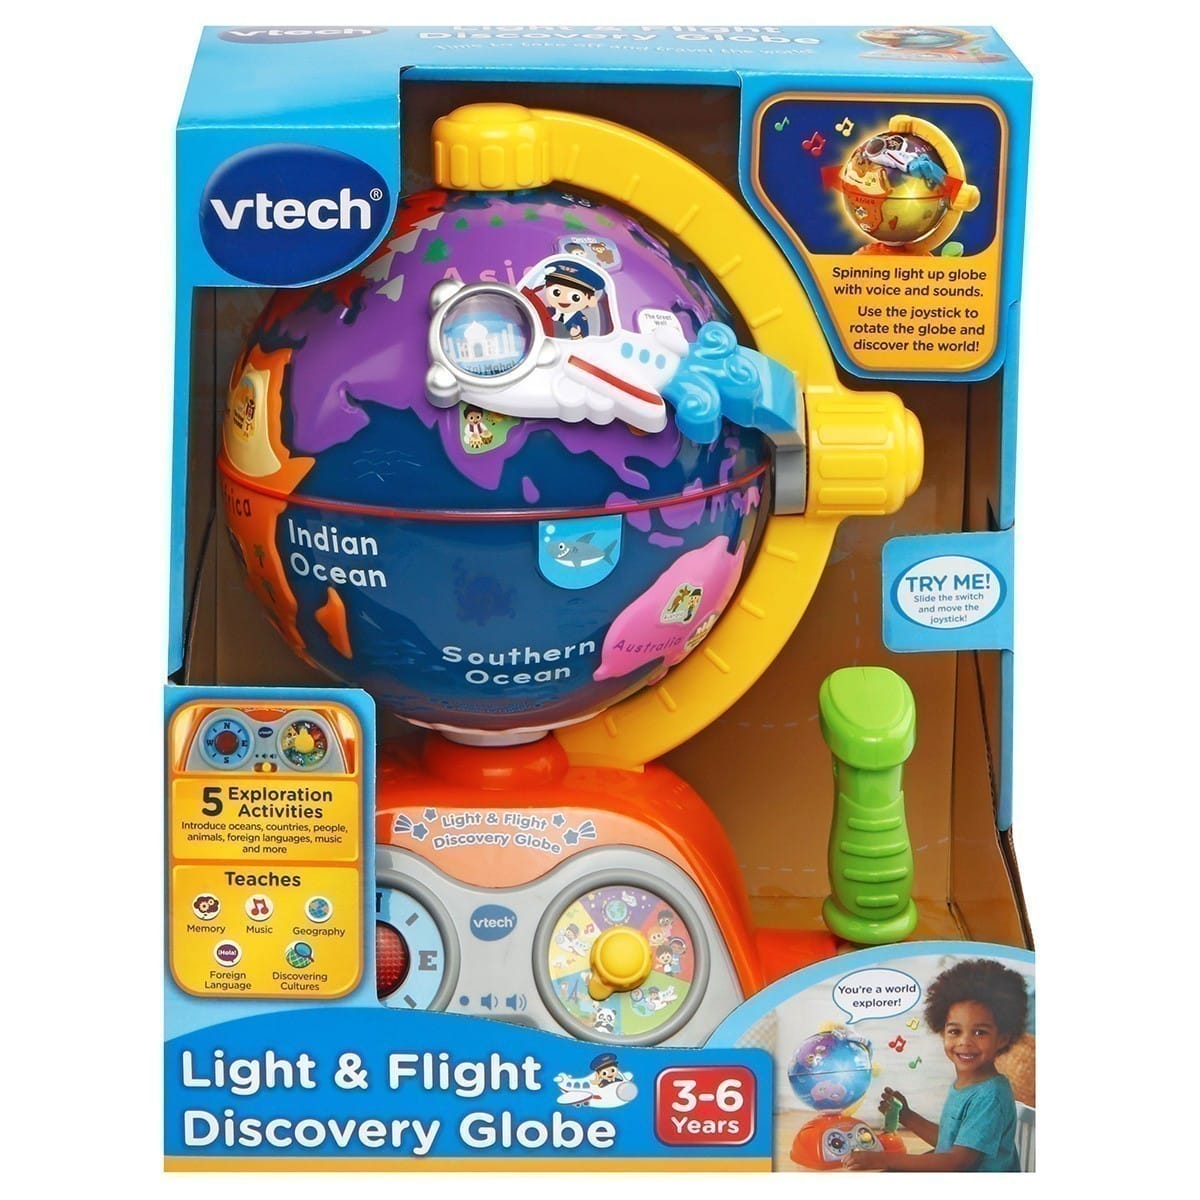 Vtech - Light & Flight Discovery Globe